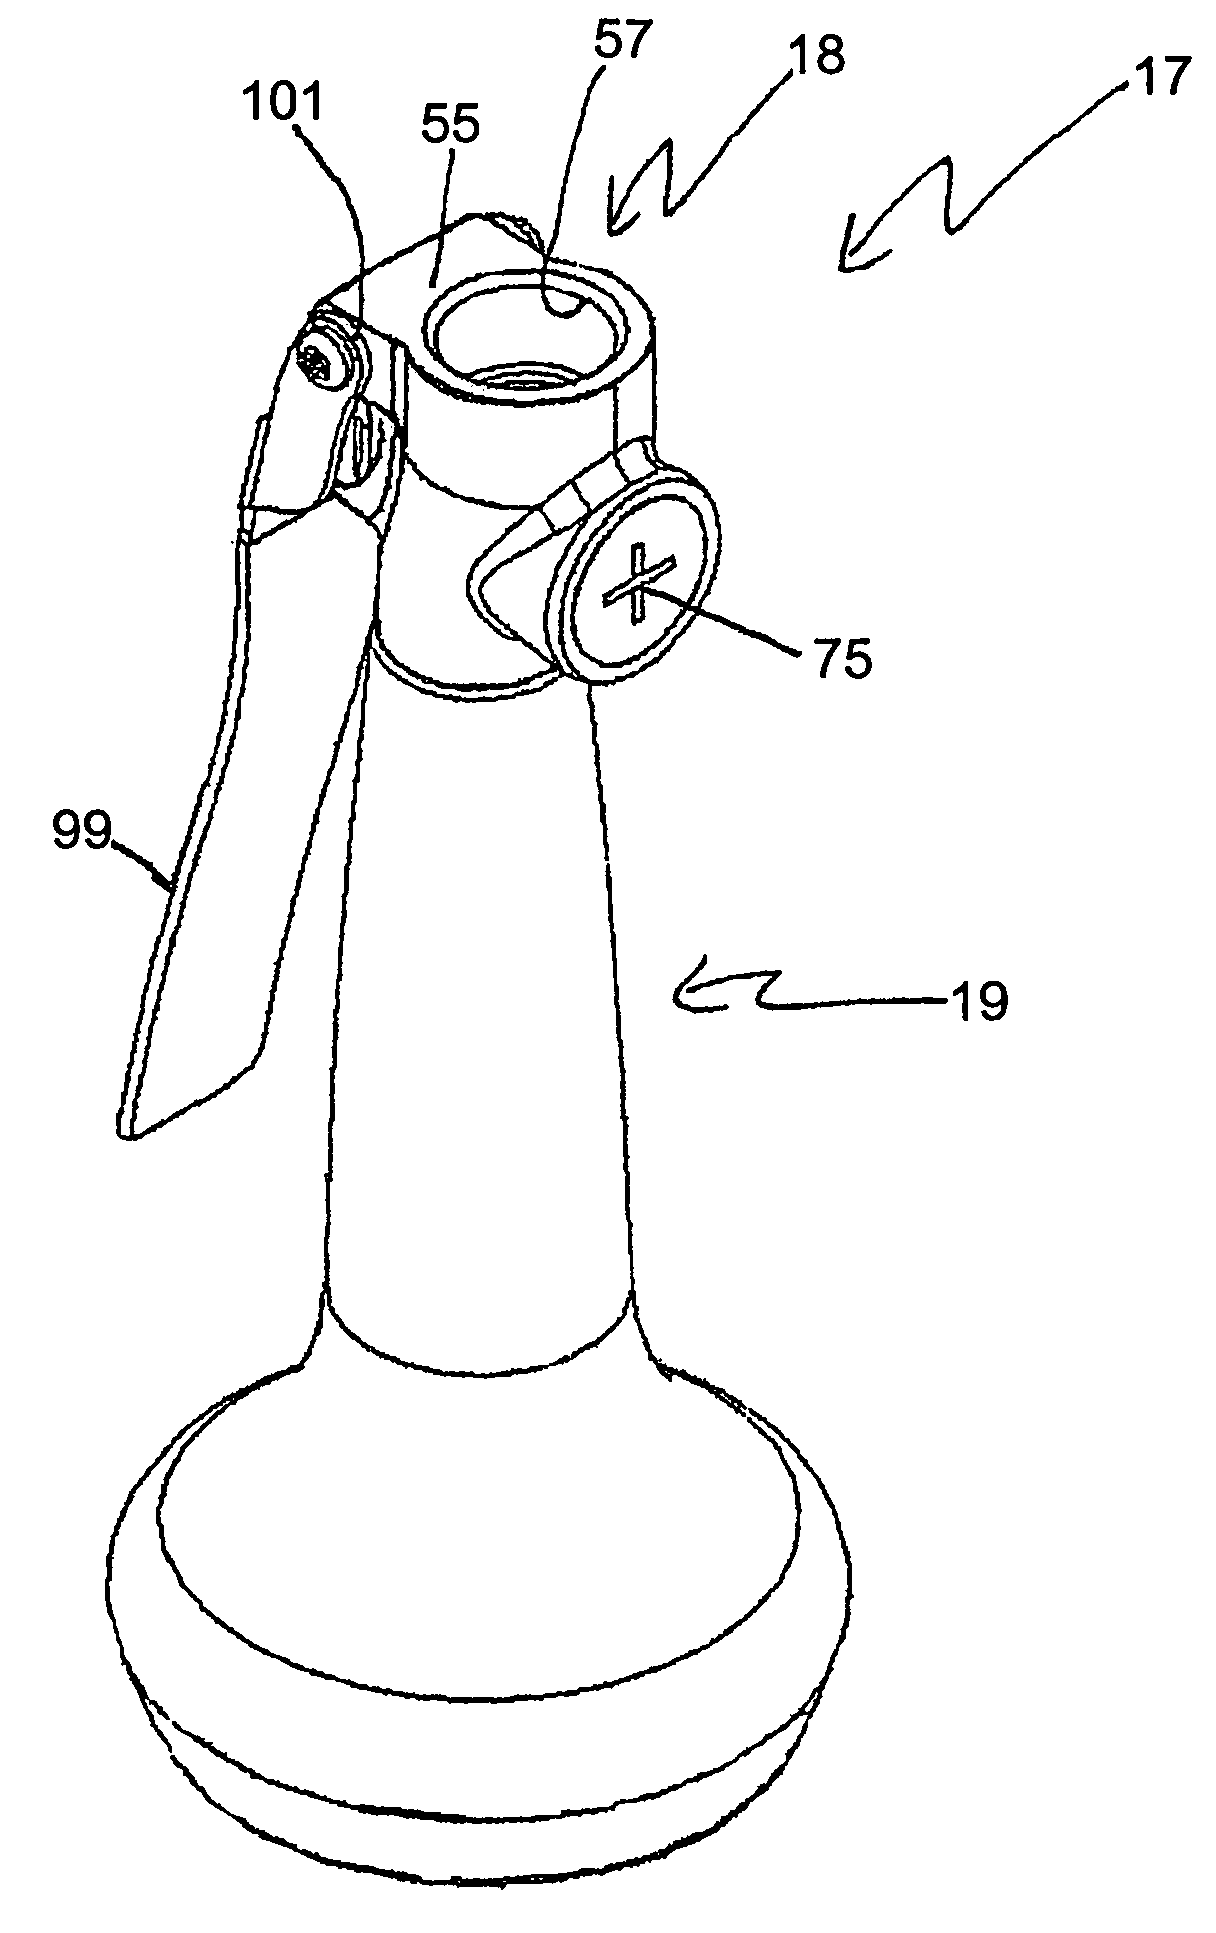 Pre-rinse unit spray valve mechanism